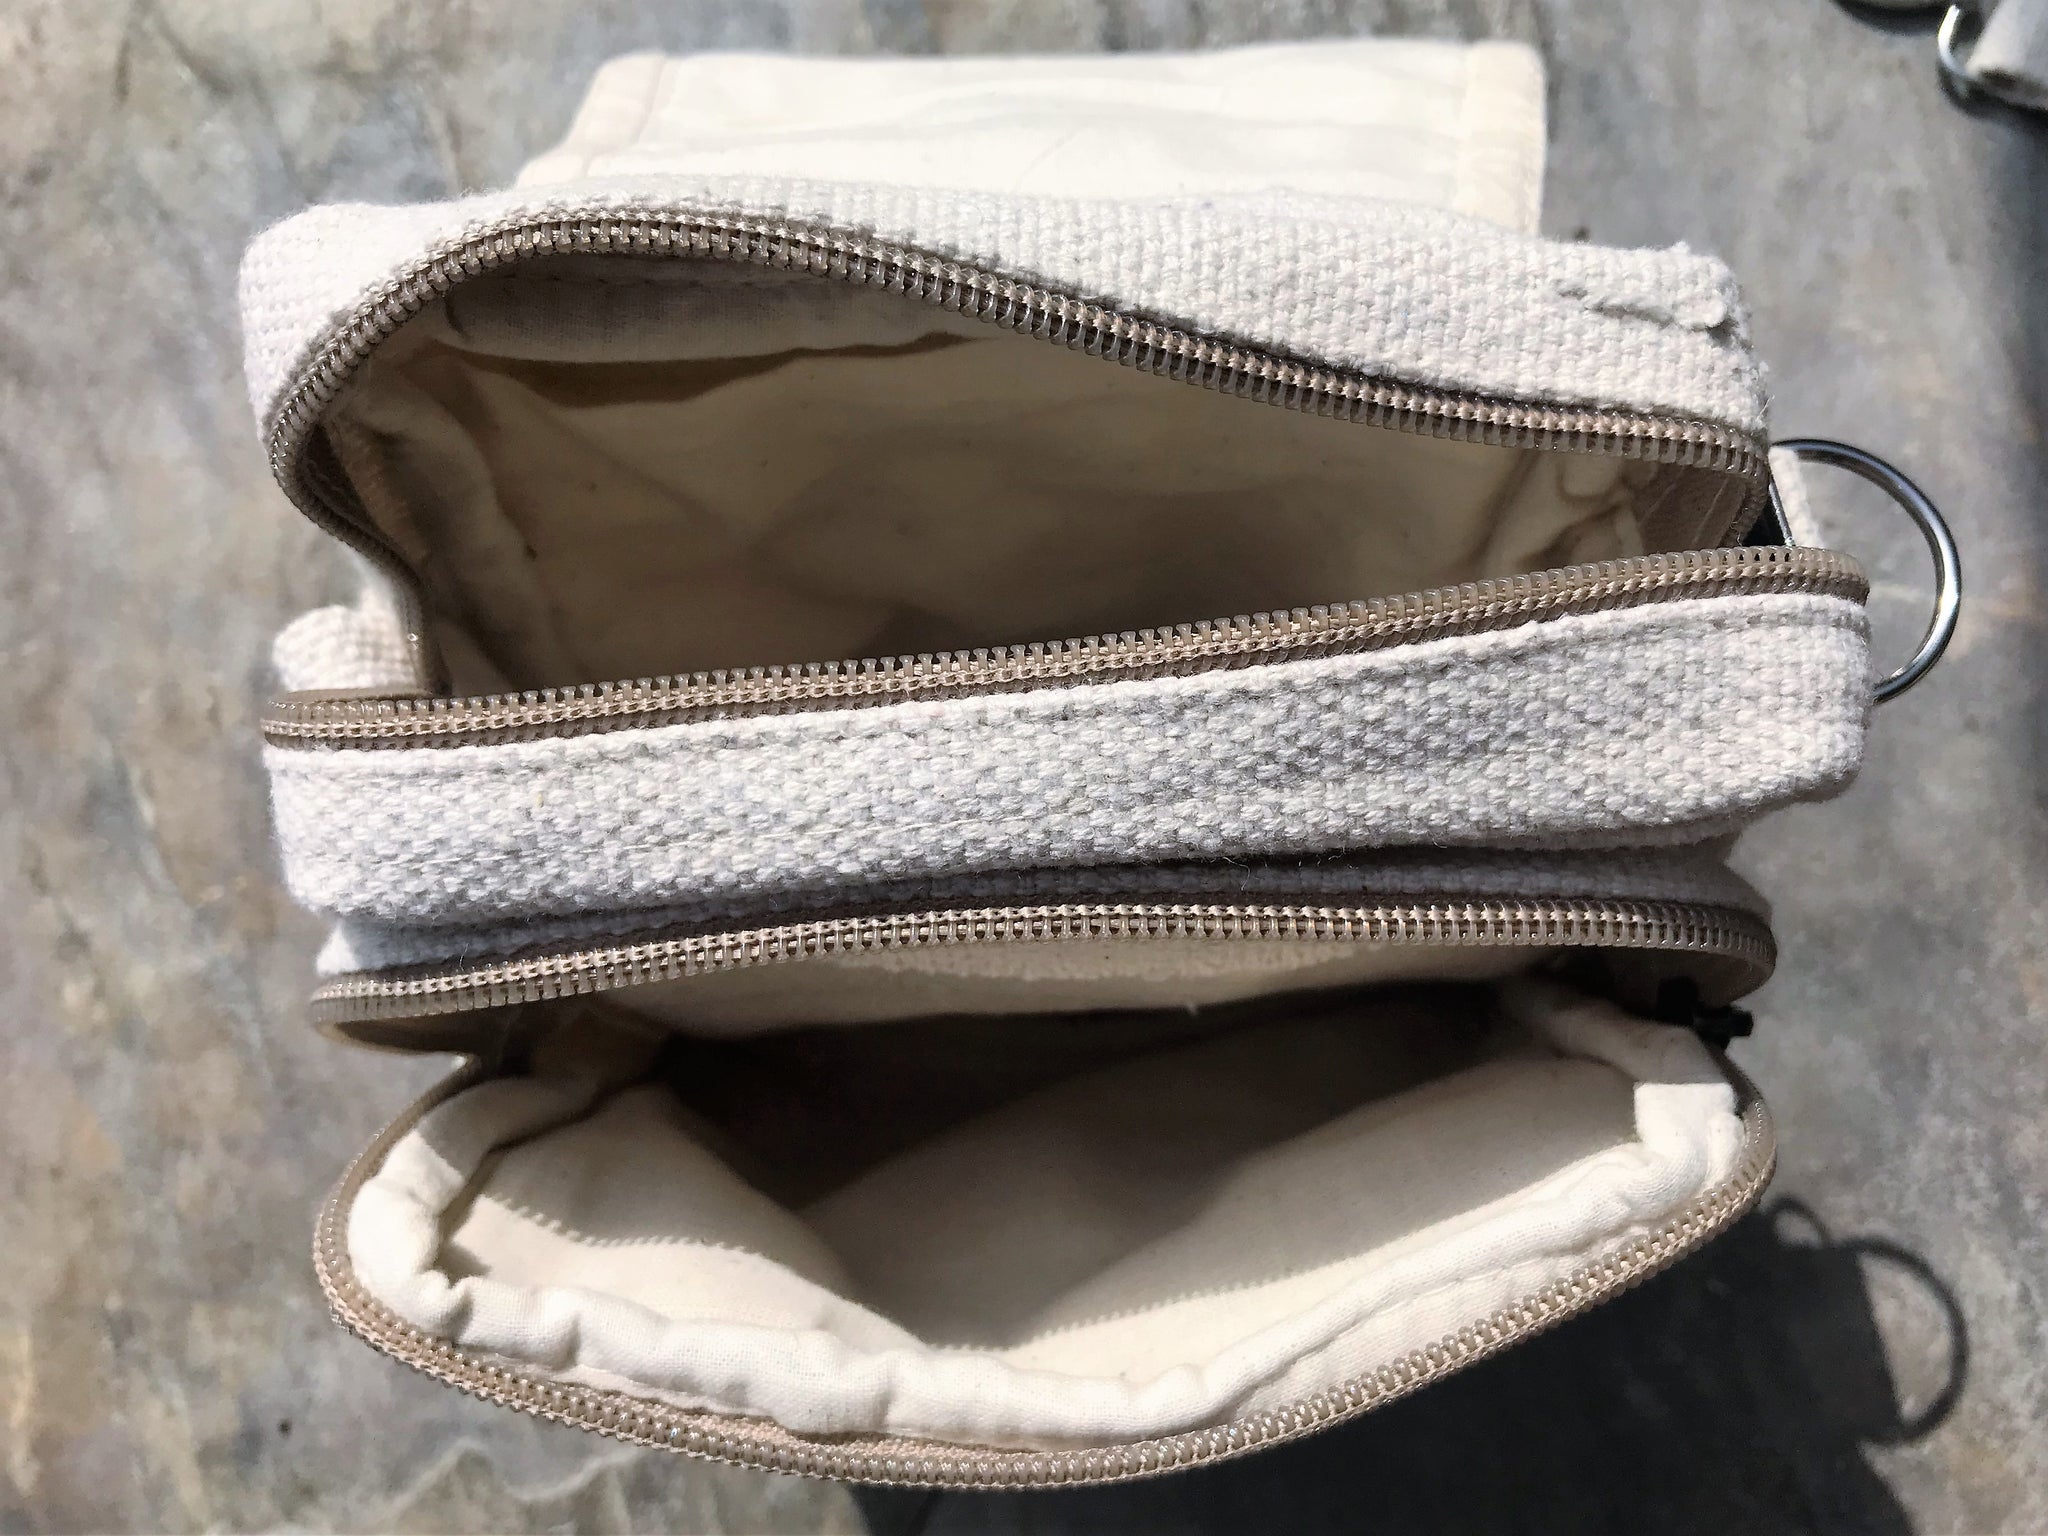 Double Zip, Hemp Pack Purse with Detachable Shoulder Strap - All Natur